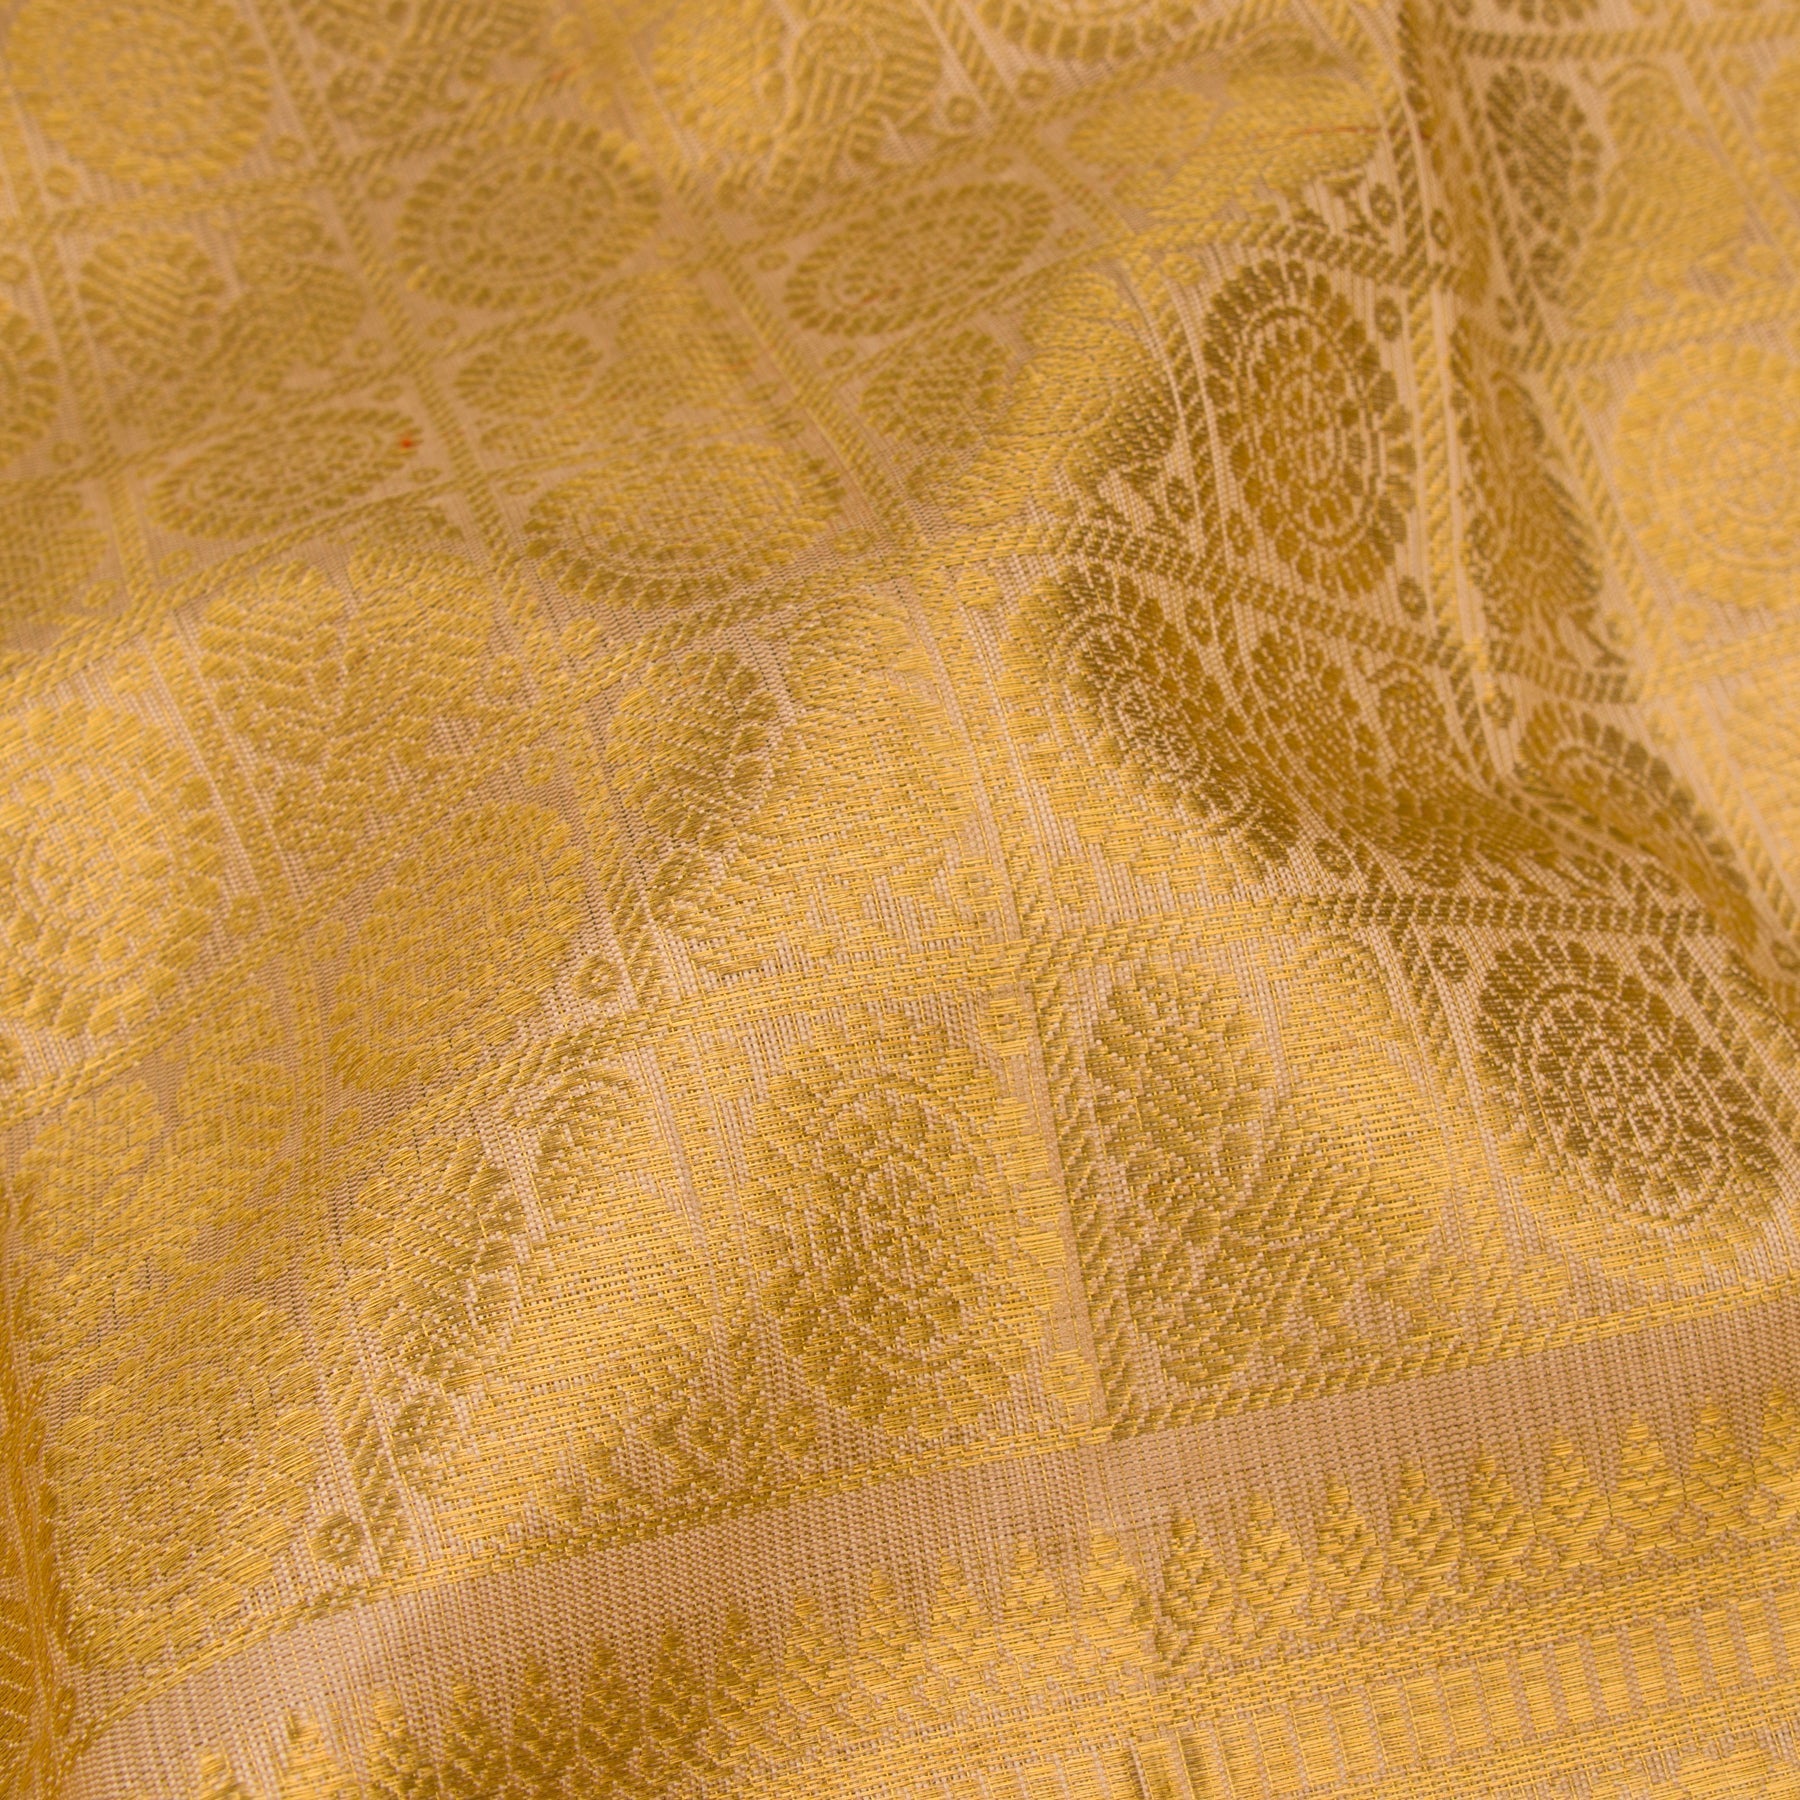 Kanakavalli Kanjivaram Silk Sari 22-110-HS001-12487 - Fabric View